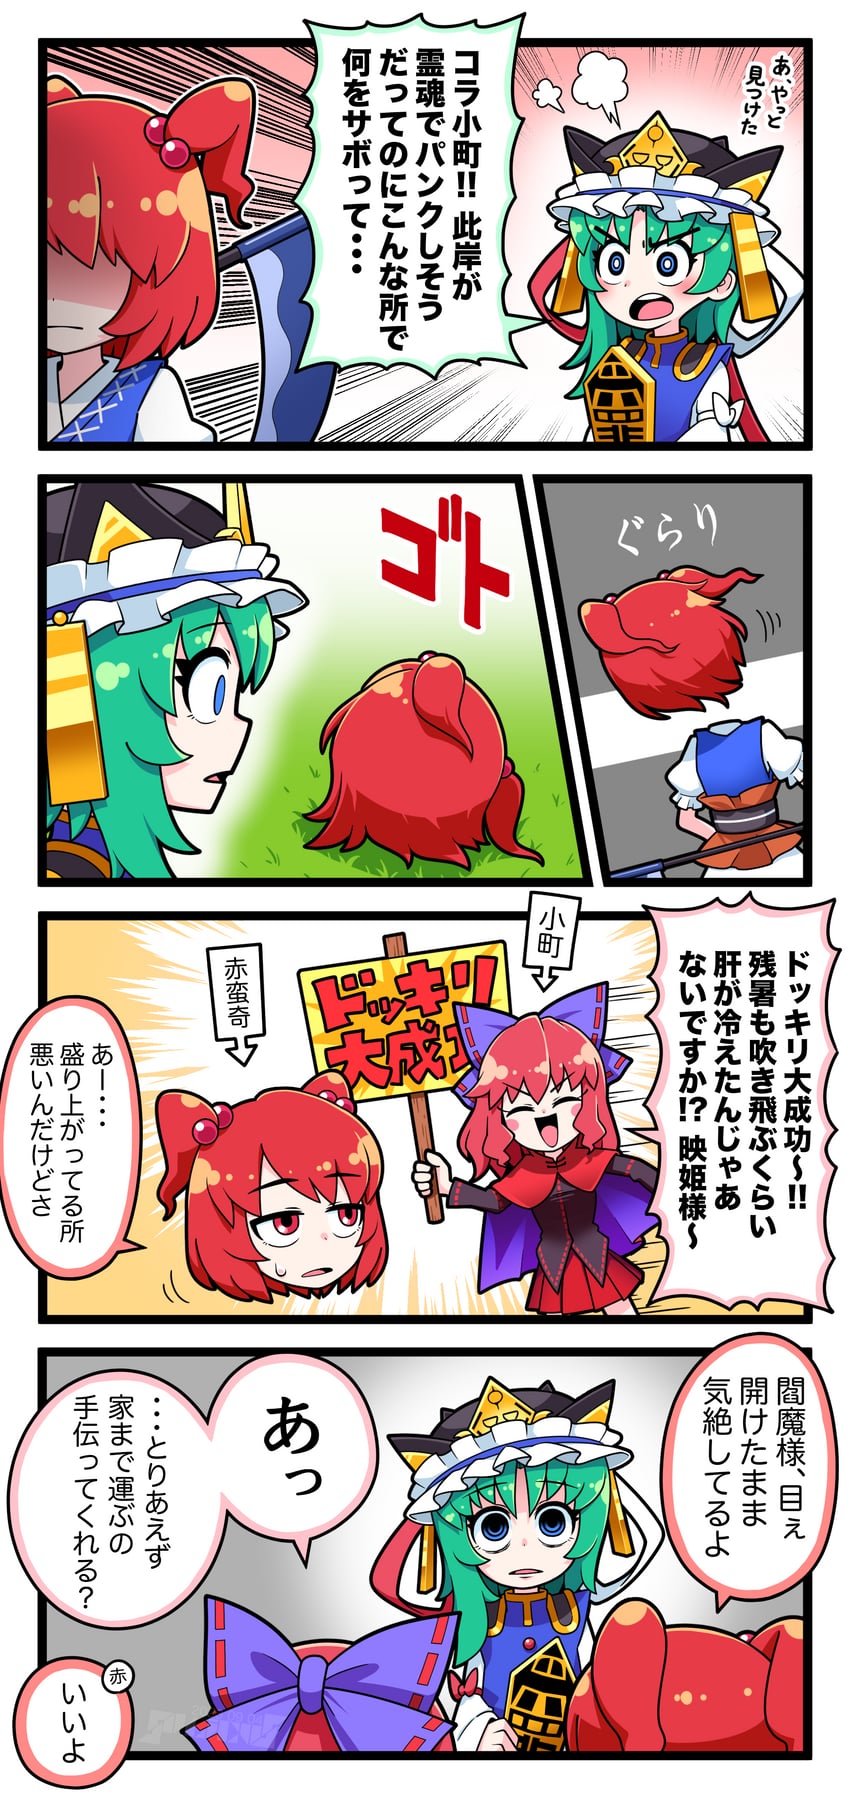 shiki eiki, onozuka komachi, and sekibanki (touhou) drawn by solidus_(sword_cube)